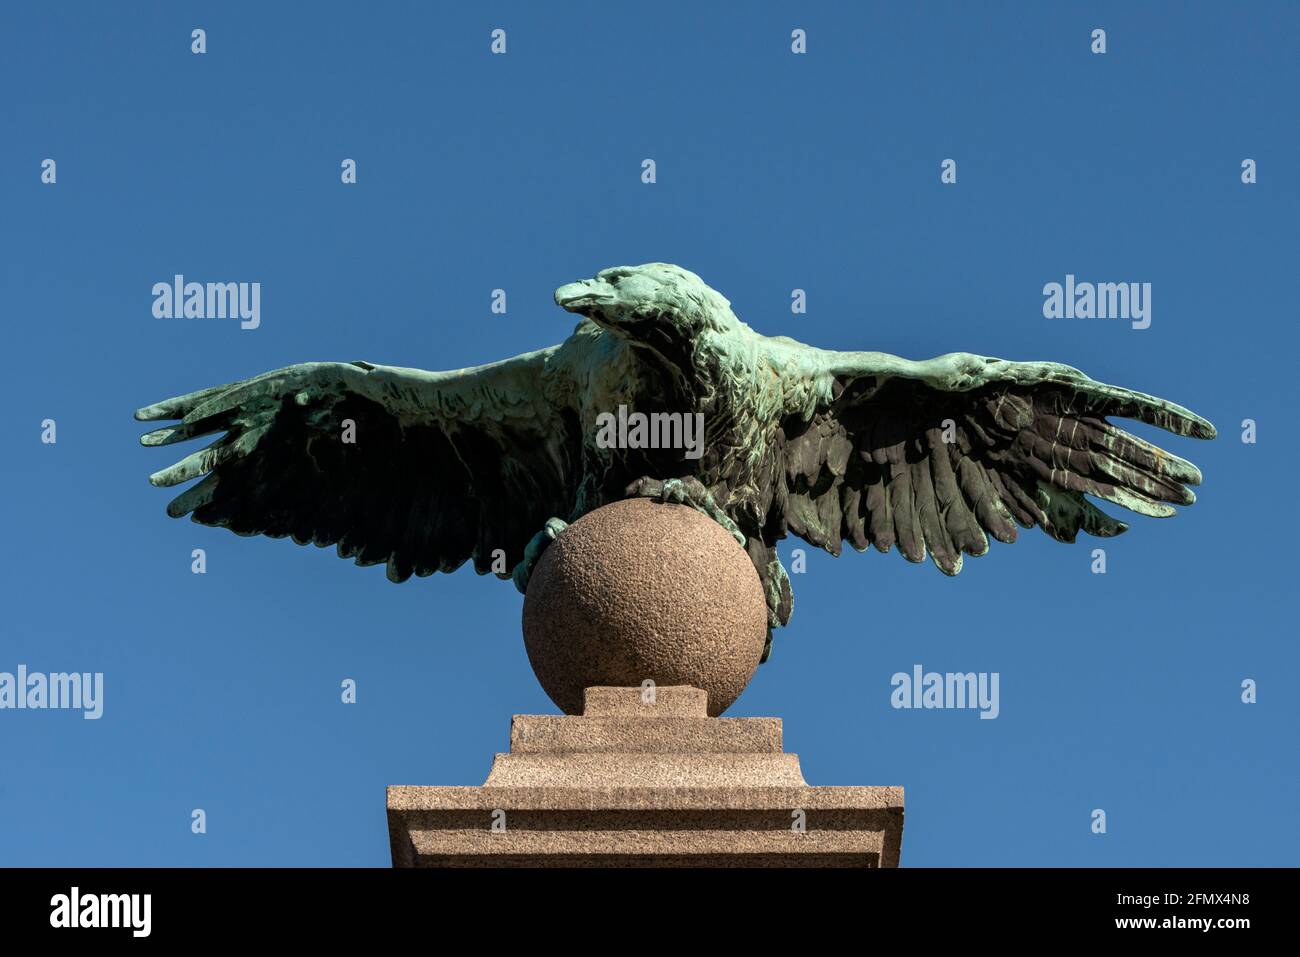 Cast iron eagle statue at the Eagle's Bridge, Sofia, Bulgaria Stock Photo